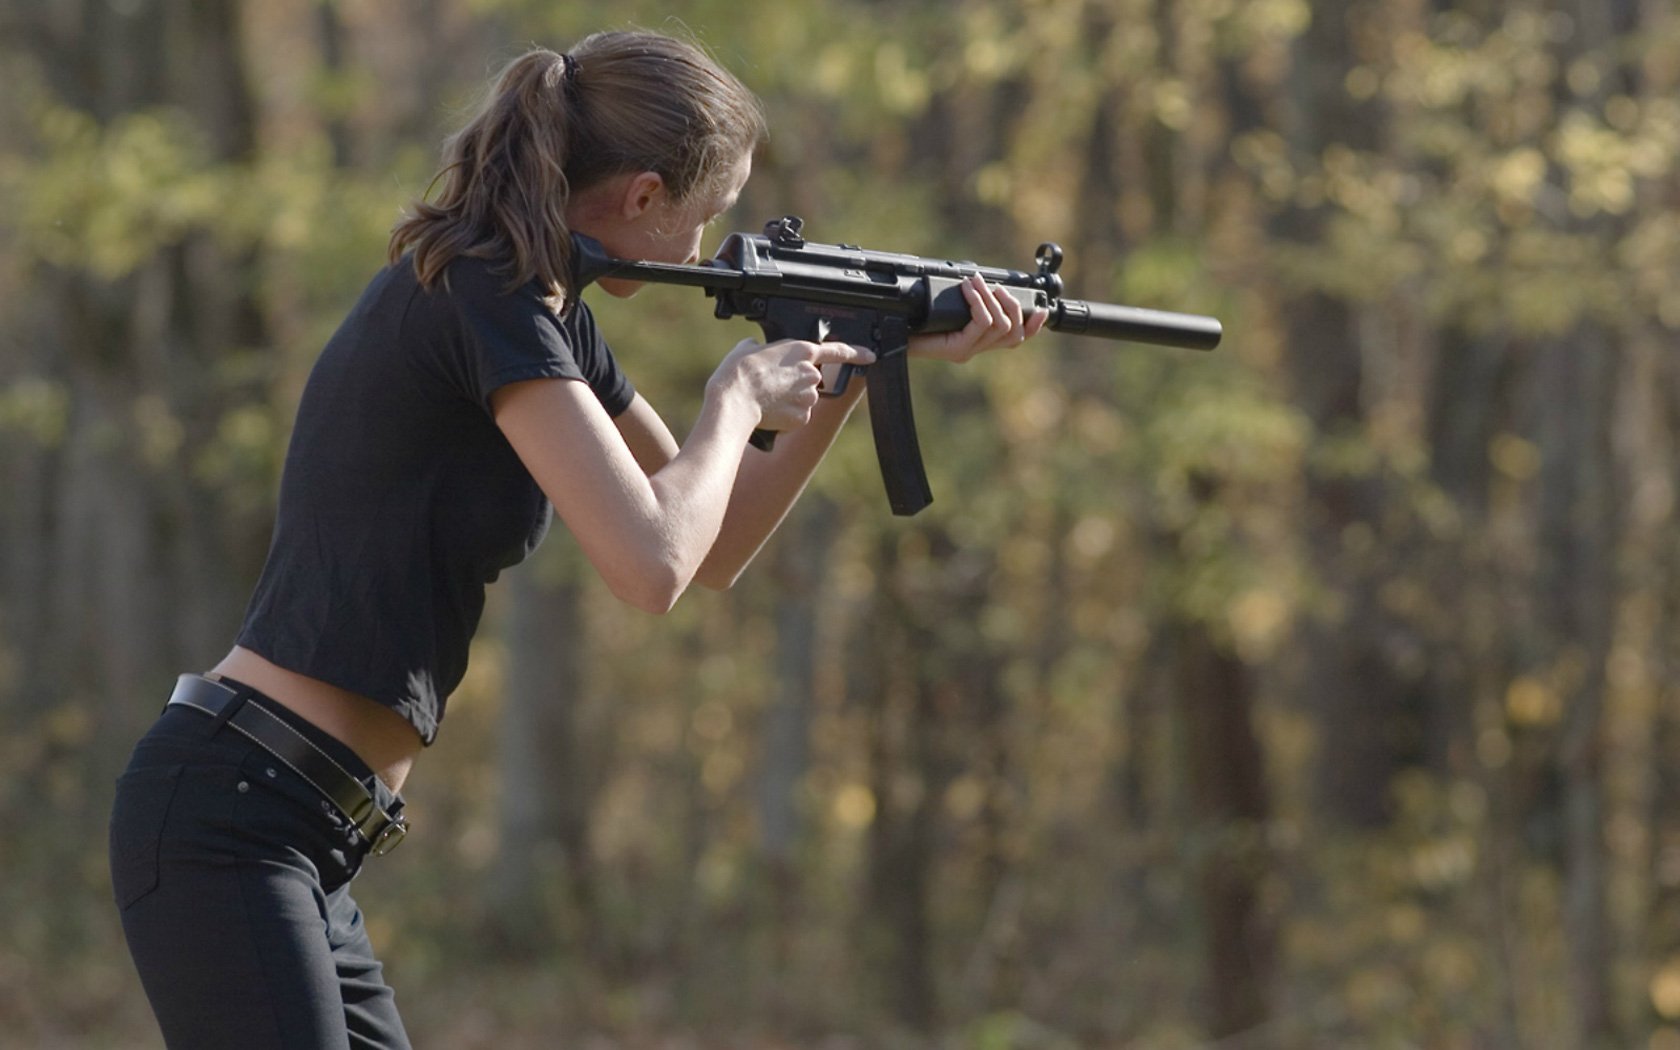 girls and guns wallpaper,gun,firearm,shooting,shooting sport,recreation